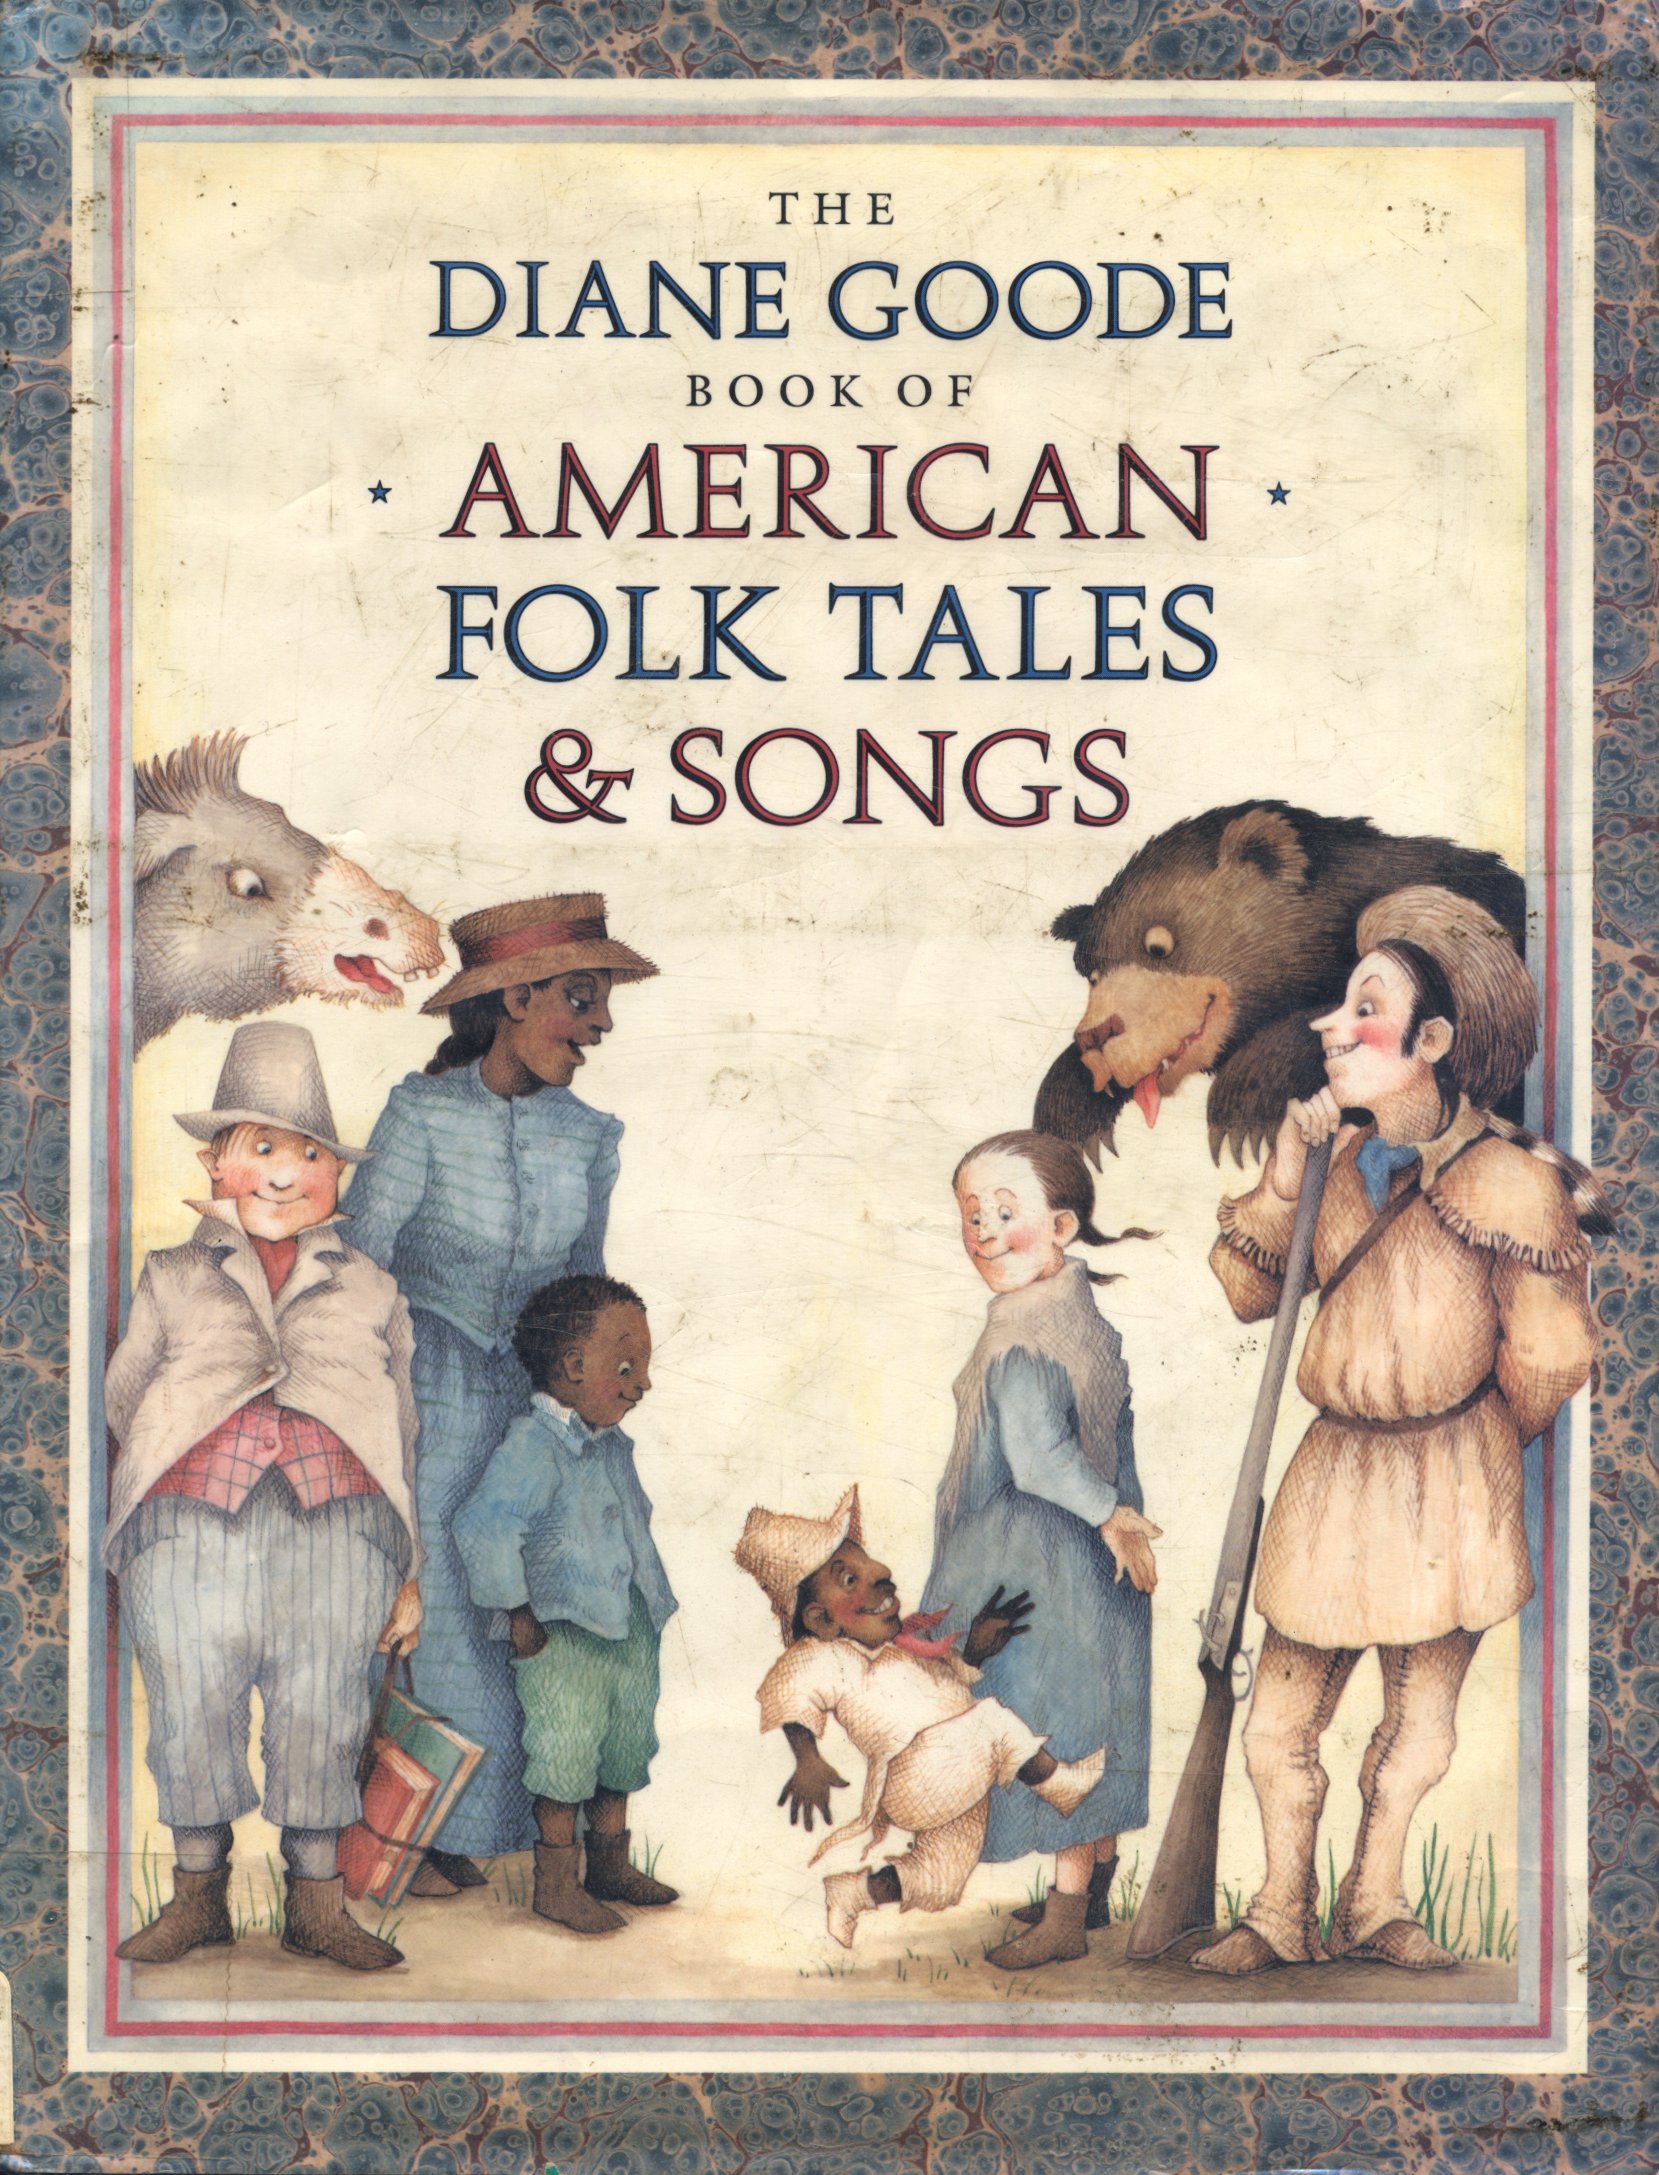 The American Folk Tales. American Folklore. Folk Tales uk. Little House Folk Tale. Tale songs